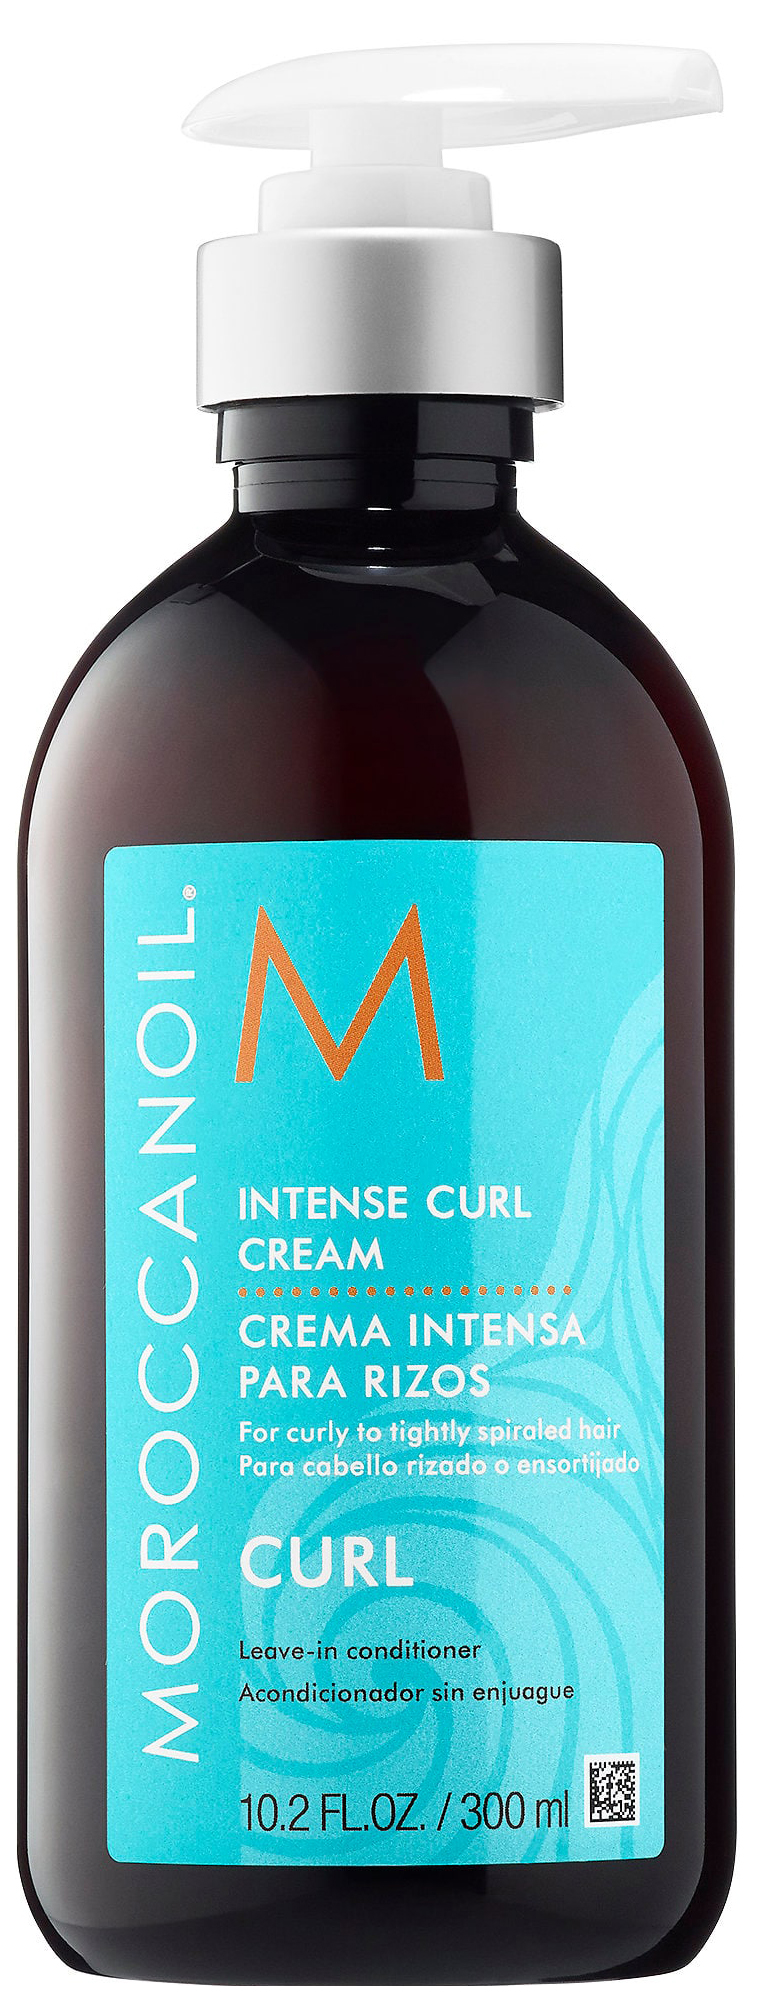 Купить Крем для подчеркивания кудрей Moroccanoil Intense Curl Cream 300 мл